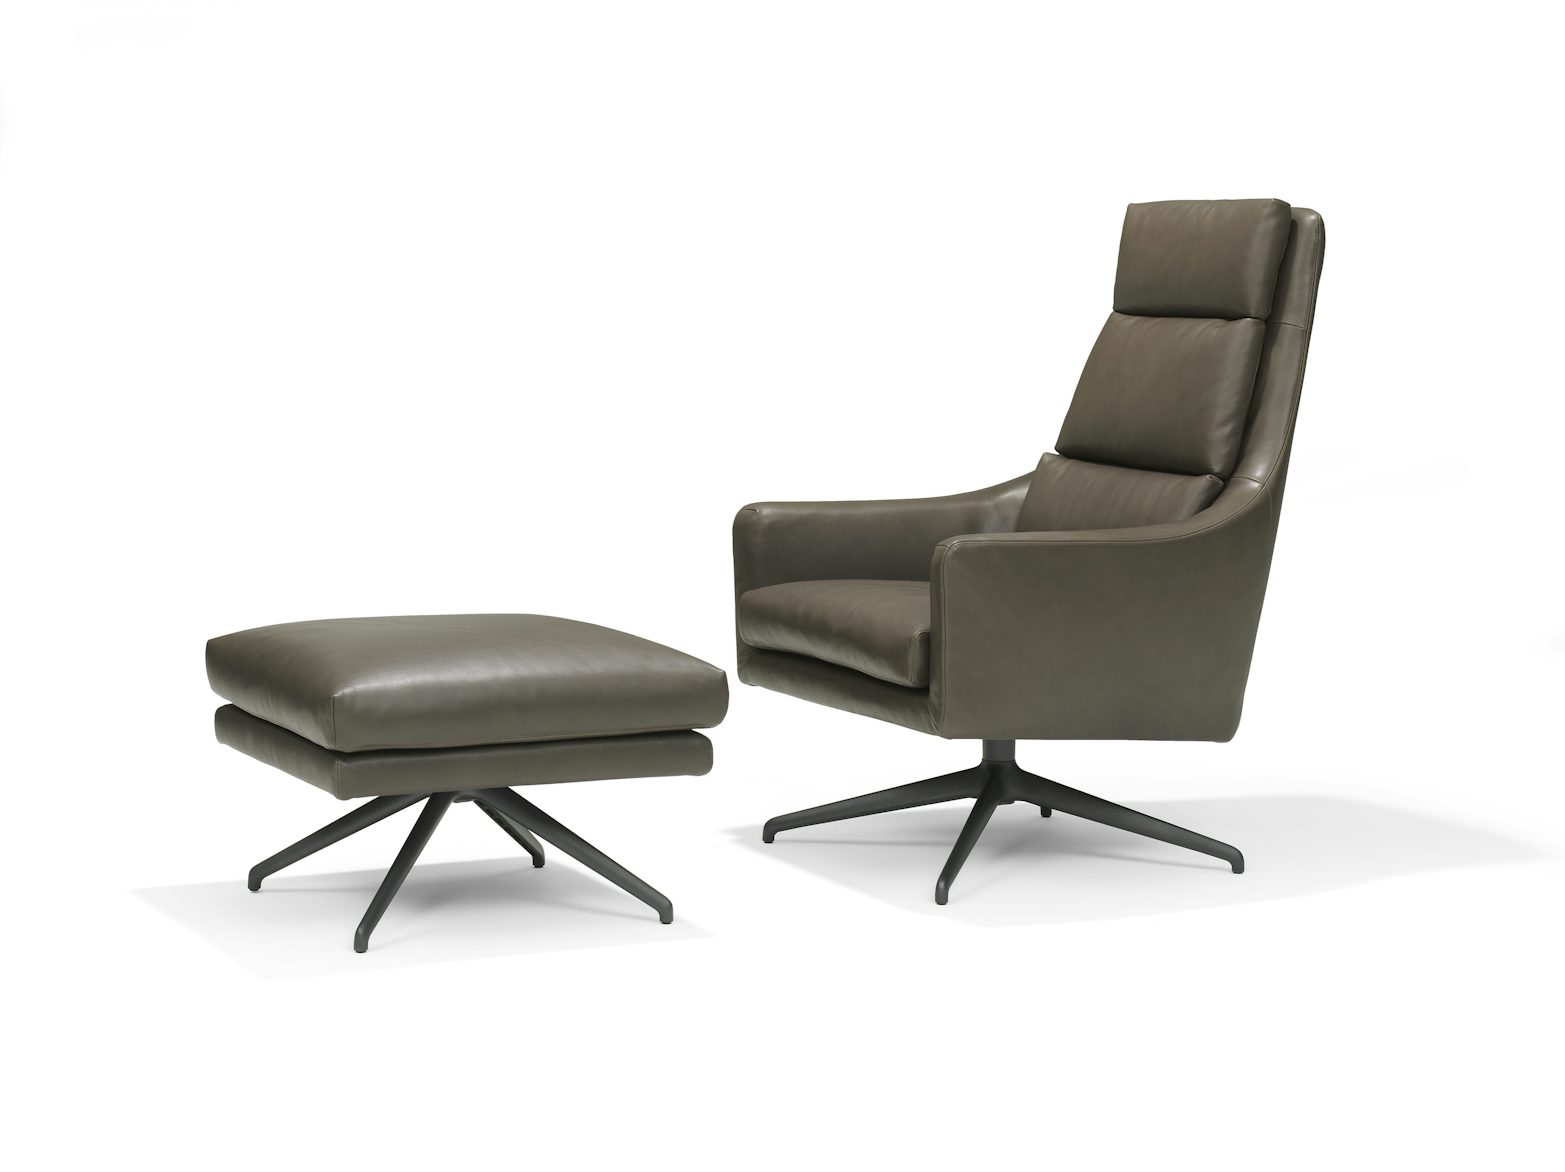 Linteloo Bel Air Lounge Chair Jan te Lintelo 4